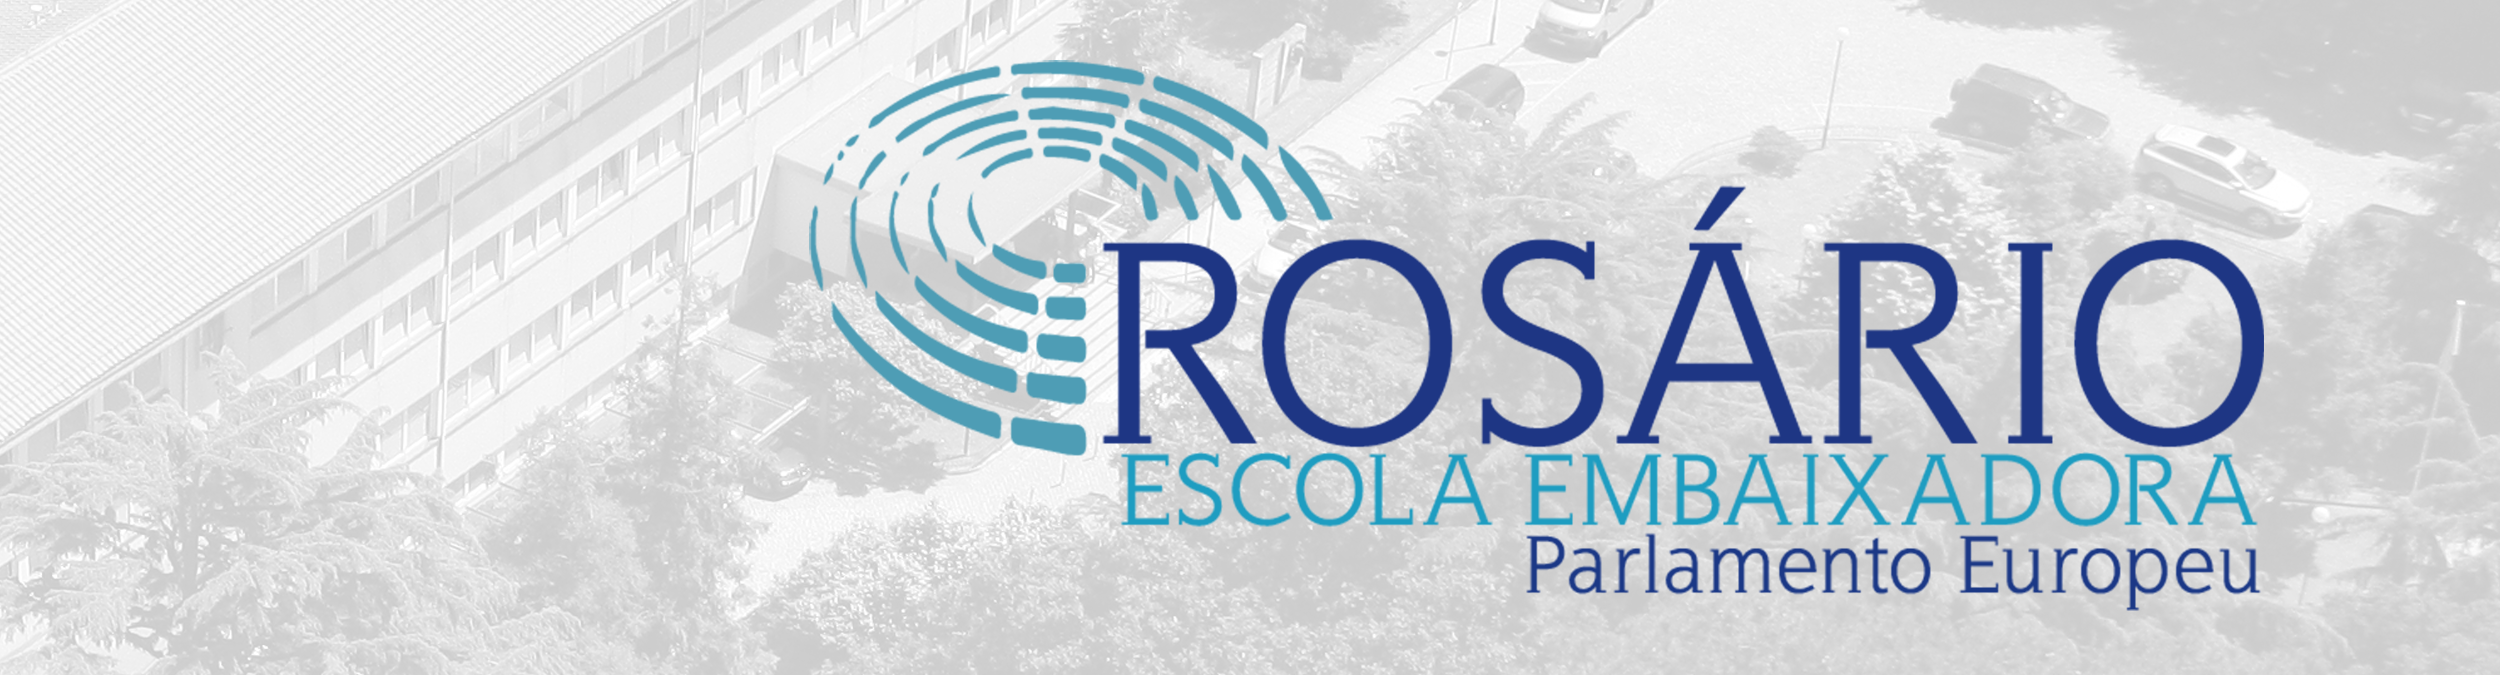 Rosário - Escola Embaixadora do Parlamento Europeu